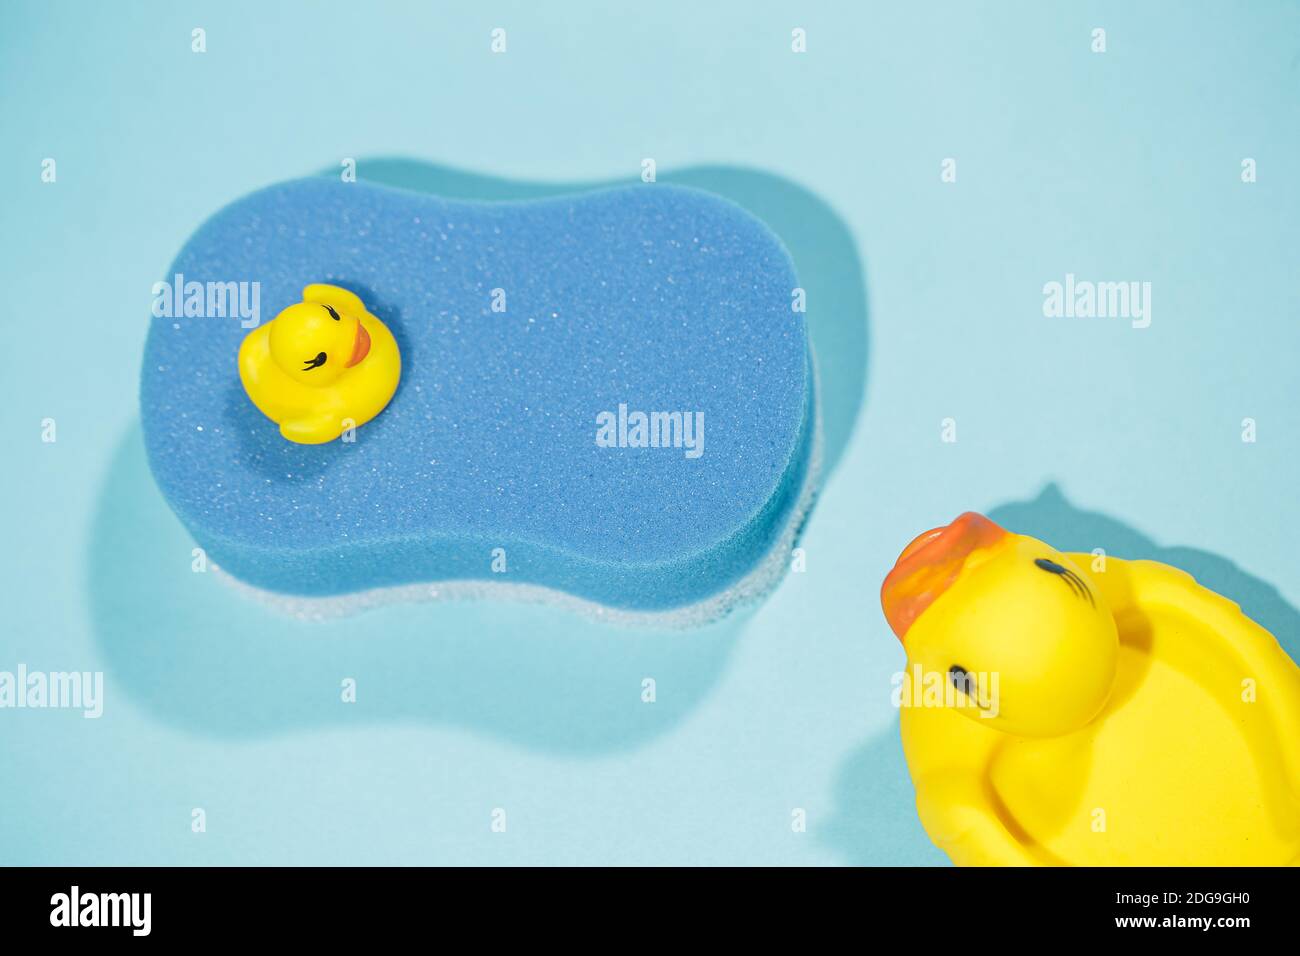 Vue de dessus du petit et grand canard en caoutchouc jaune sur le dessus de l'éponge de bain bleue, sur fond bleu, concept de nettoyage et de bain Banque D'Images